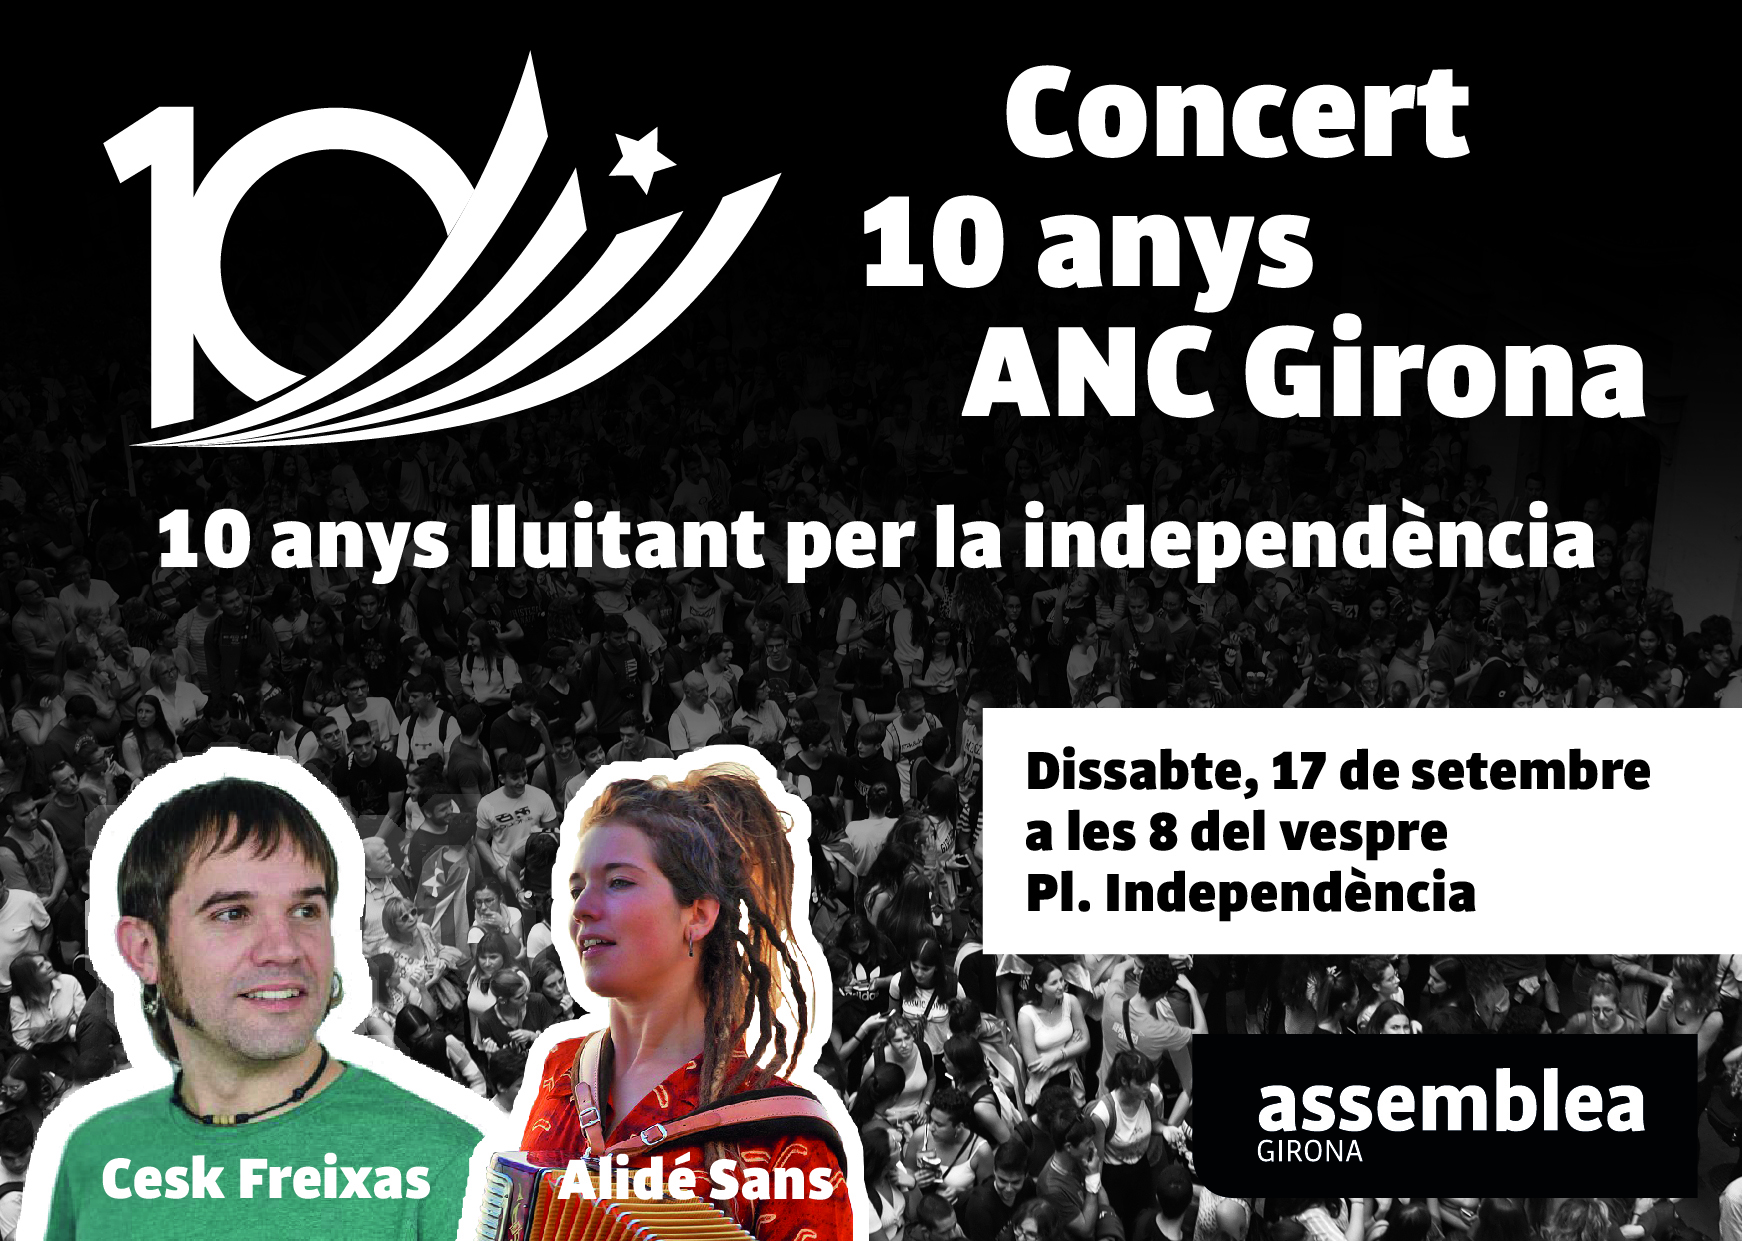 Concert 10 anys ANC Girona